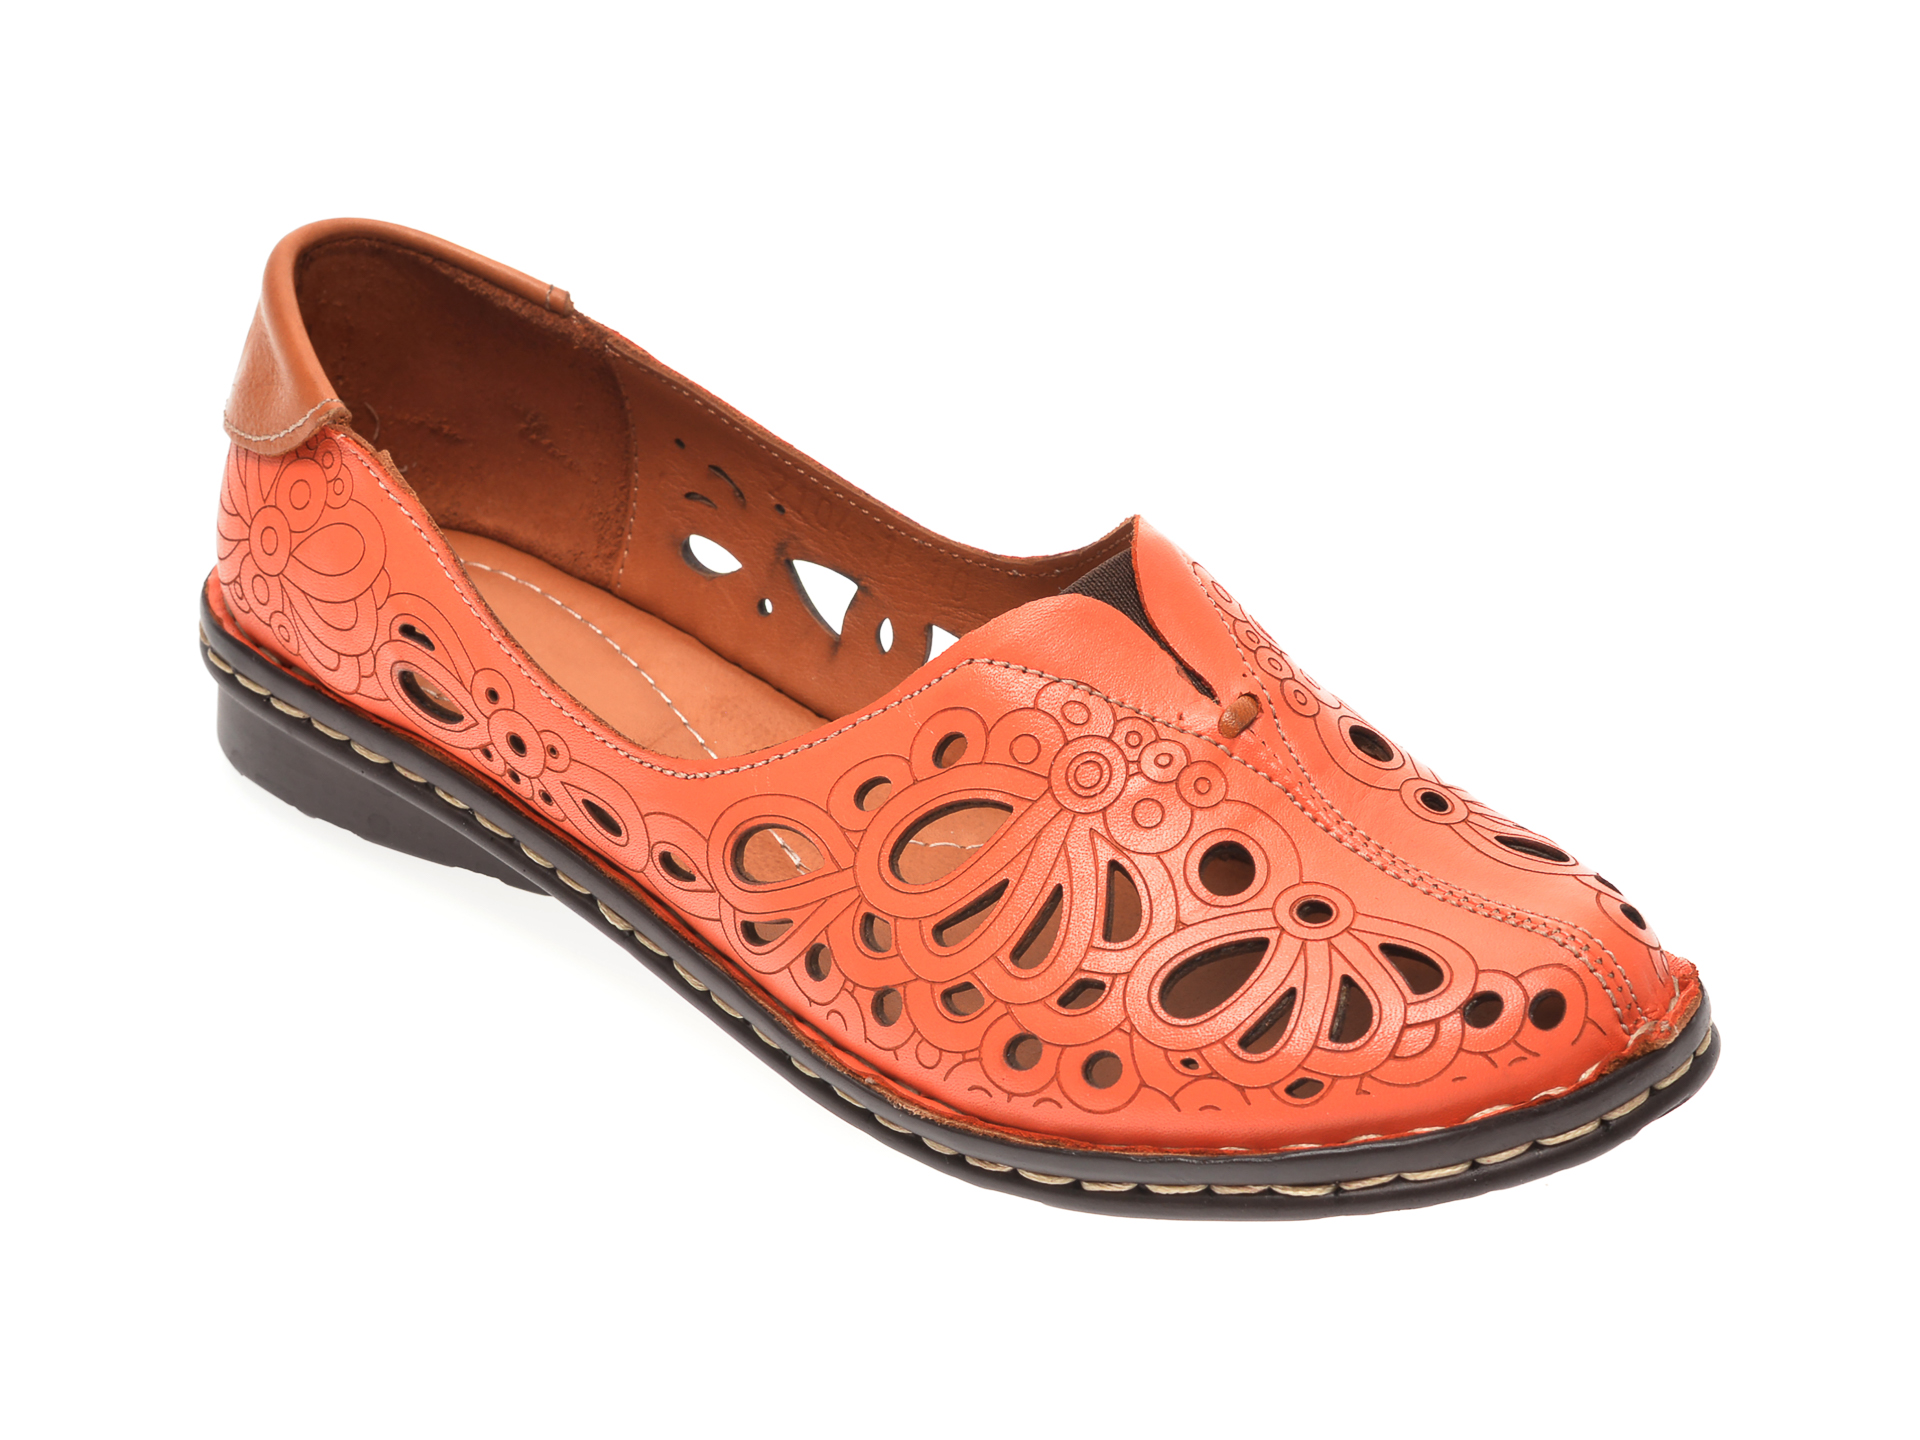 Pantofi FLAVIA PASSINI portocalii, 21041, din piele naturala